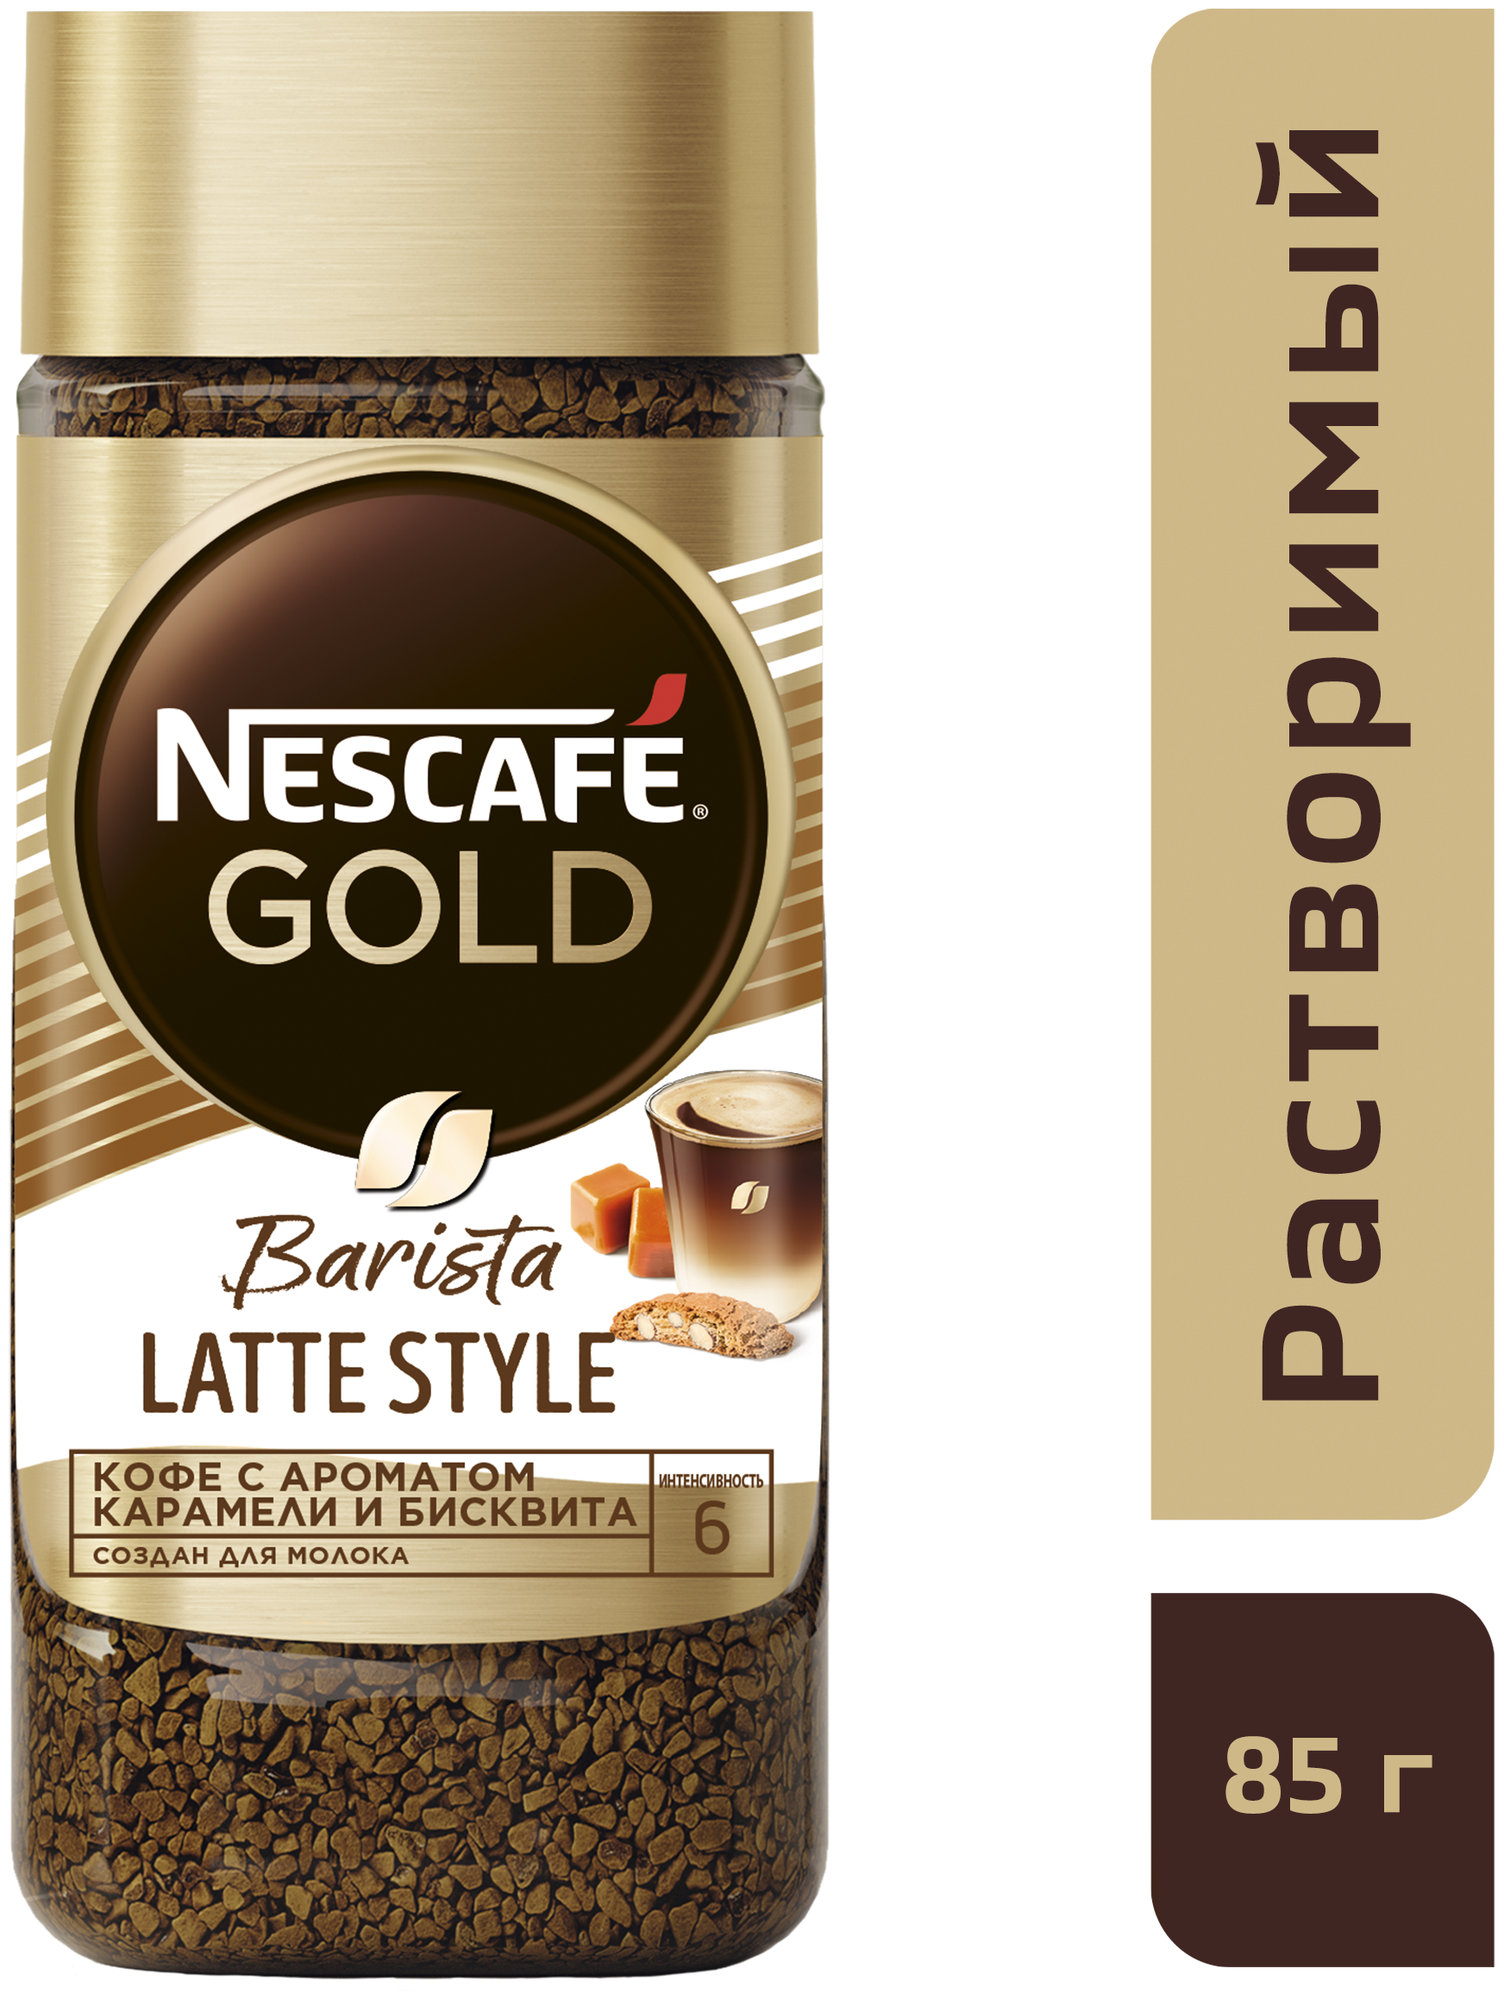 Кофе растворимый Nescafe Gold Barista Latte Style, сублимированный ароматизированный, с добавлением жареного молотого, 85гр Nesquik - фото №2